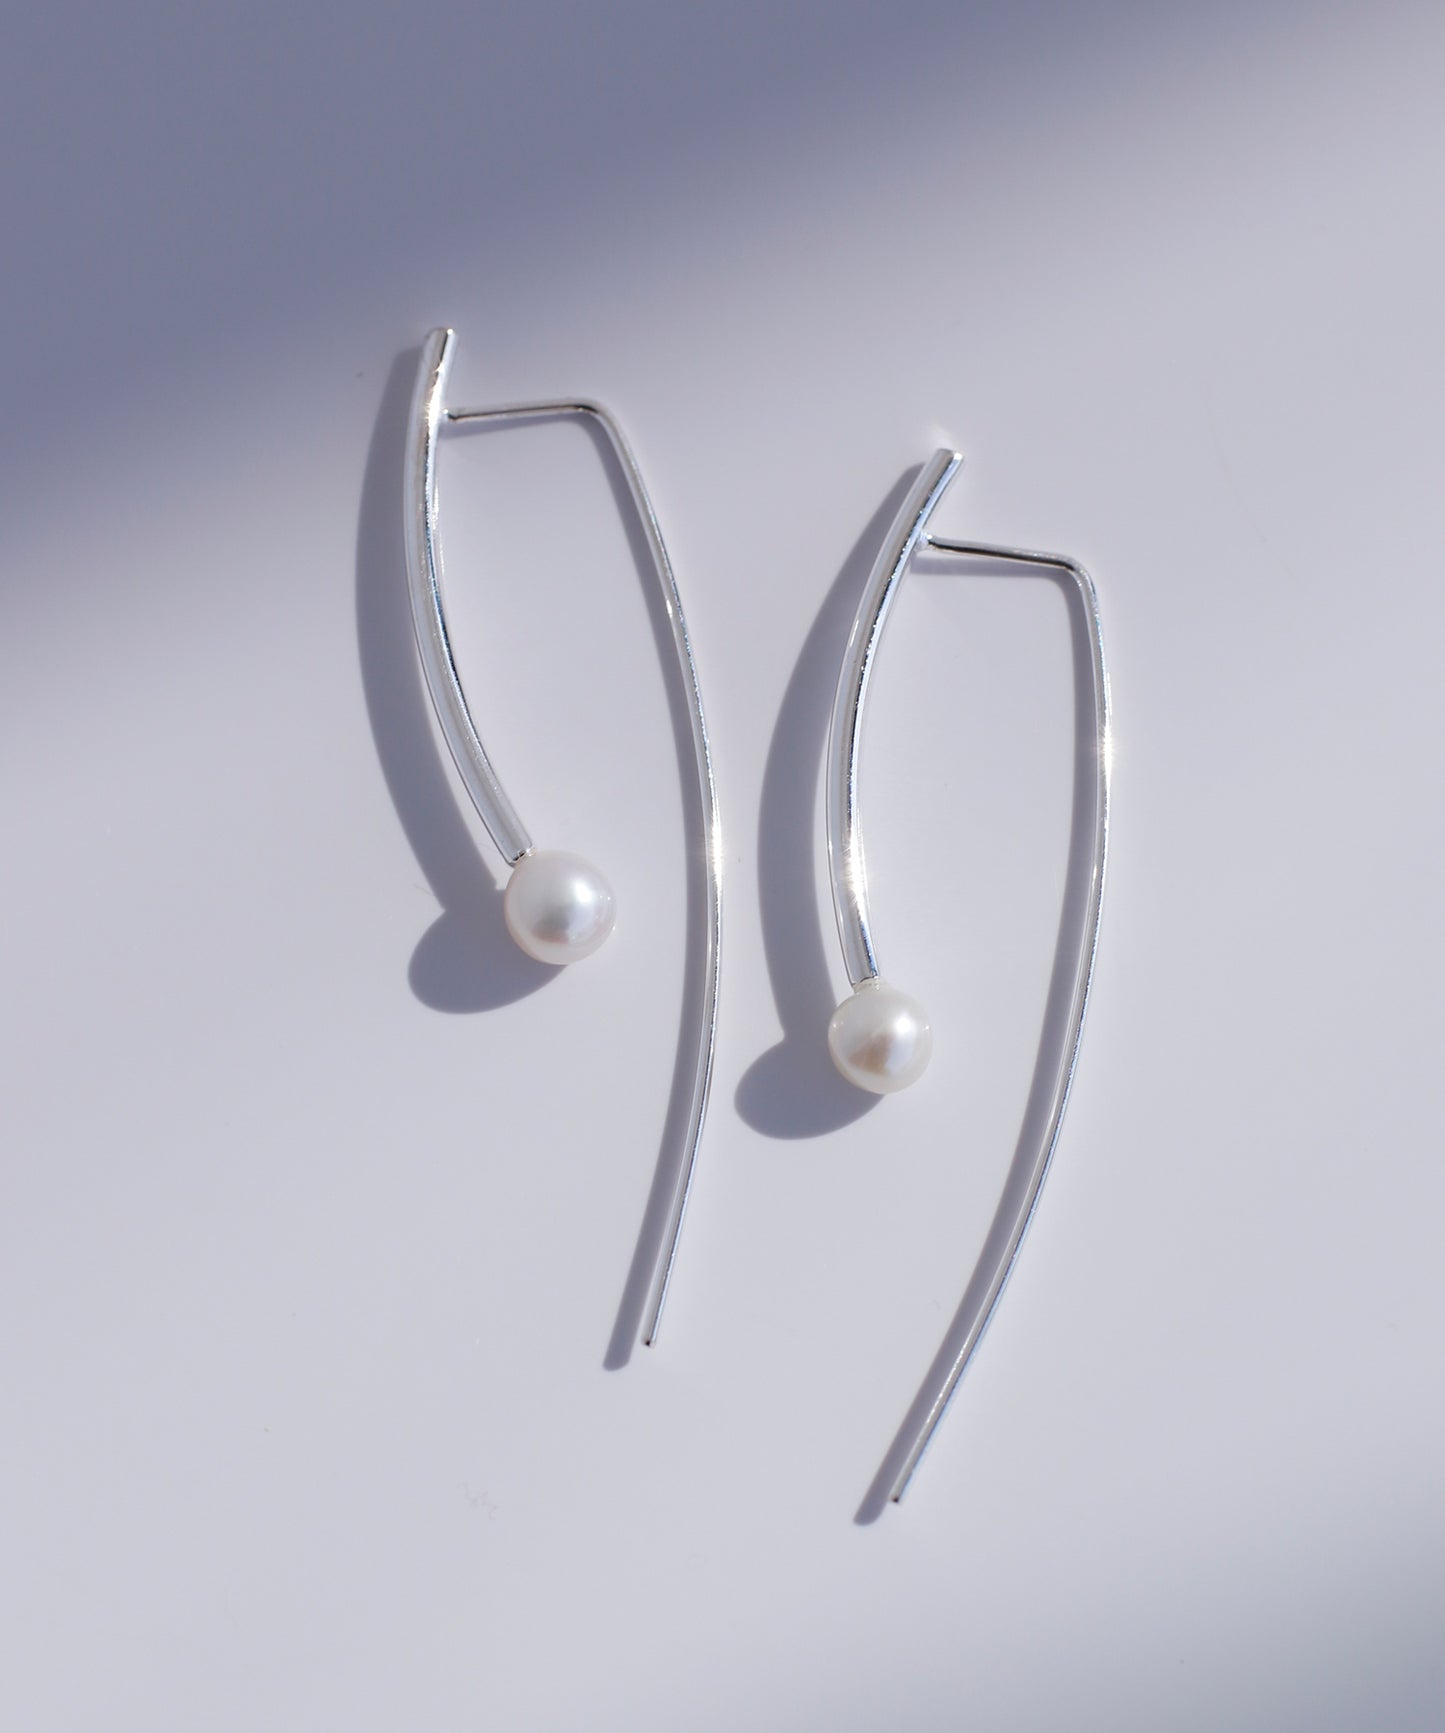 【Stainless Steel IP】Pearl x Bar Earrings